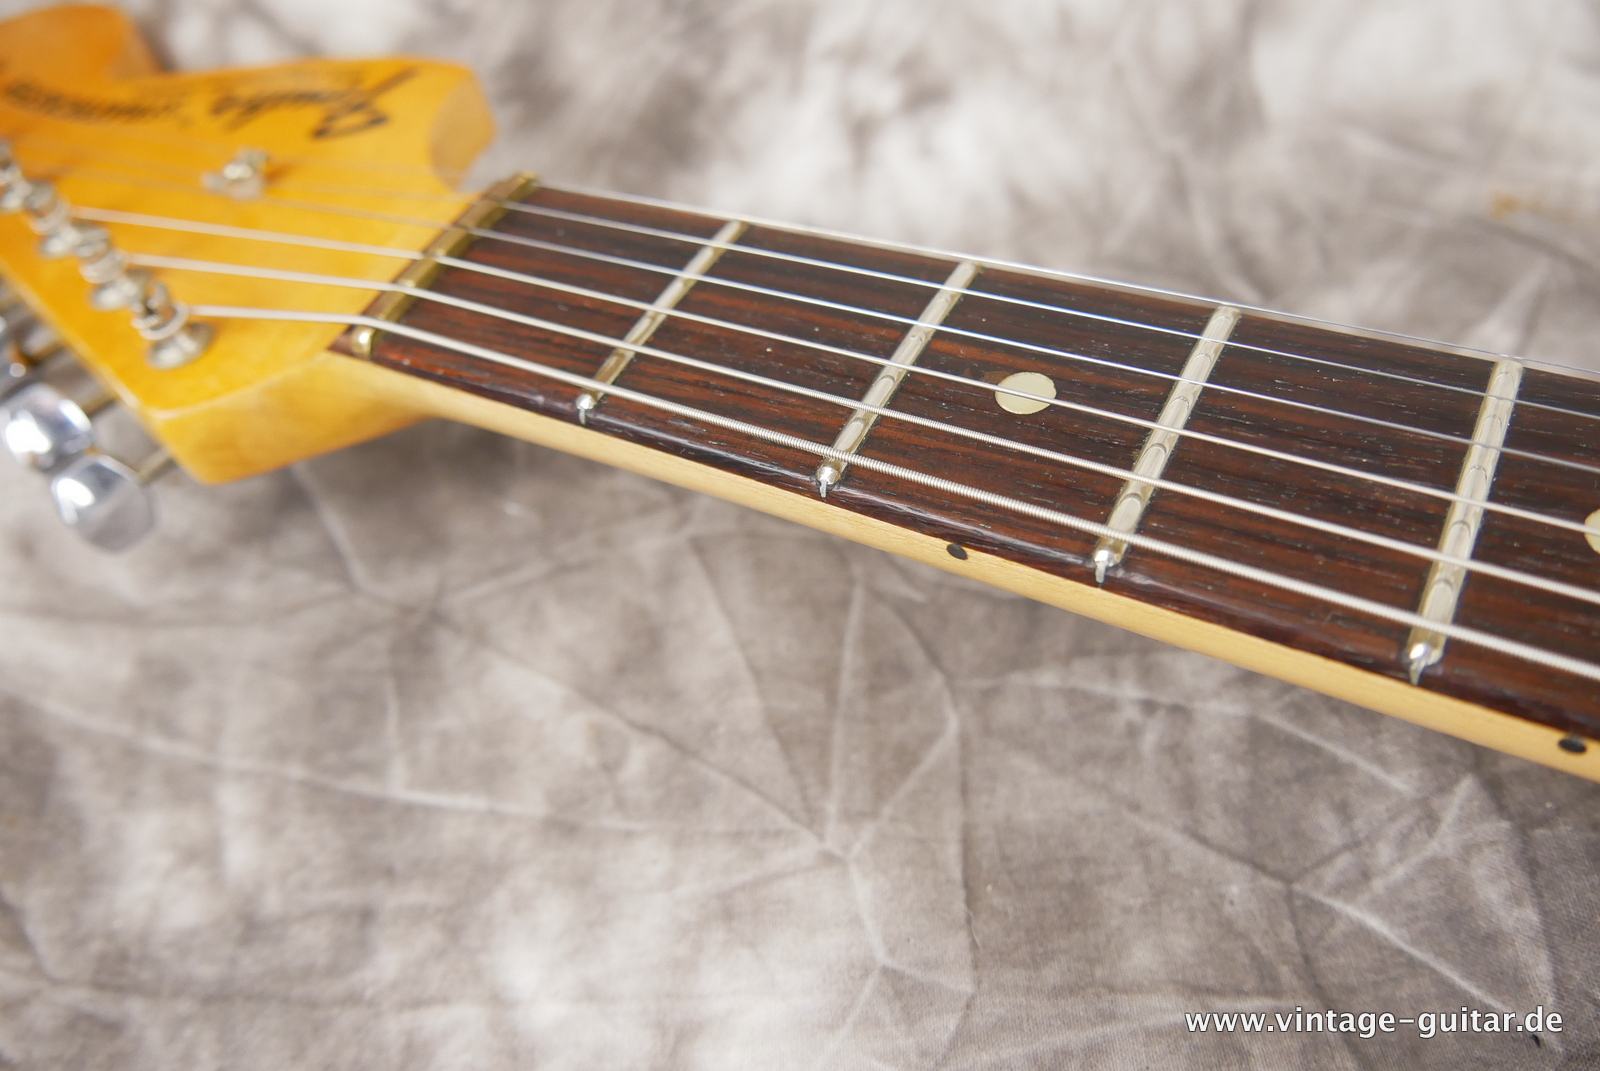 Fender-Stratocaster-1971-sunburst-4-hole-015.JPG